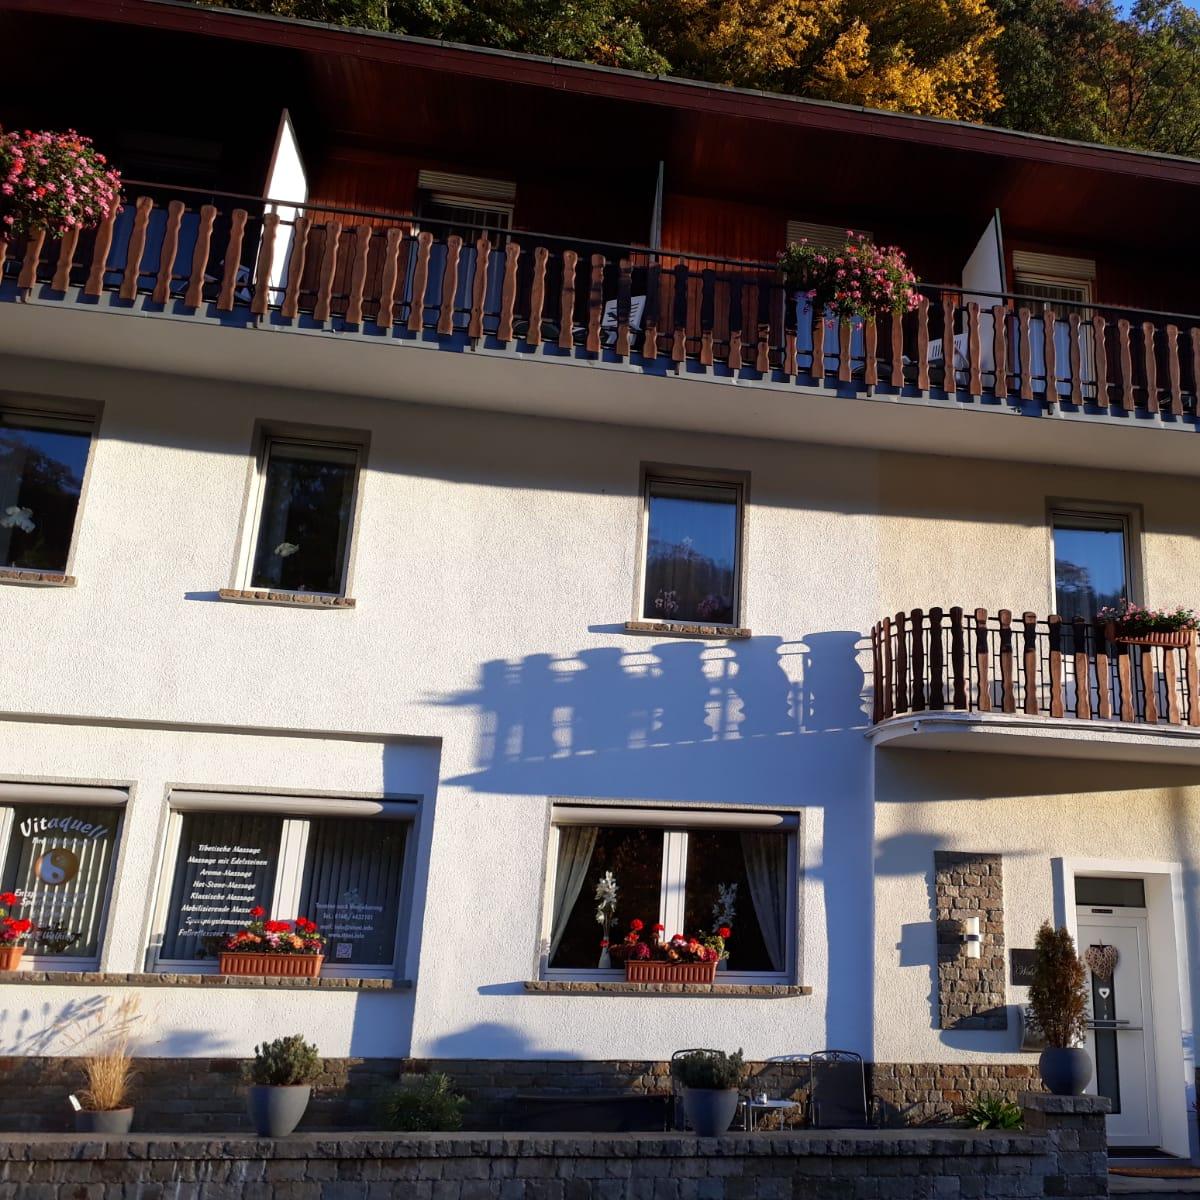 Restaurant "Pension Villa Waldfrieden" in Bad Bertrich